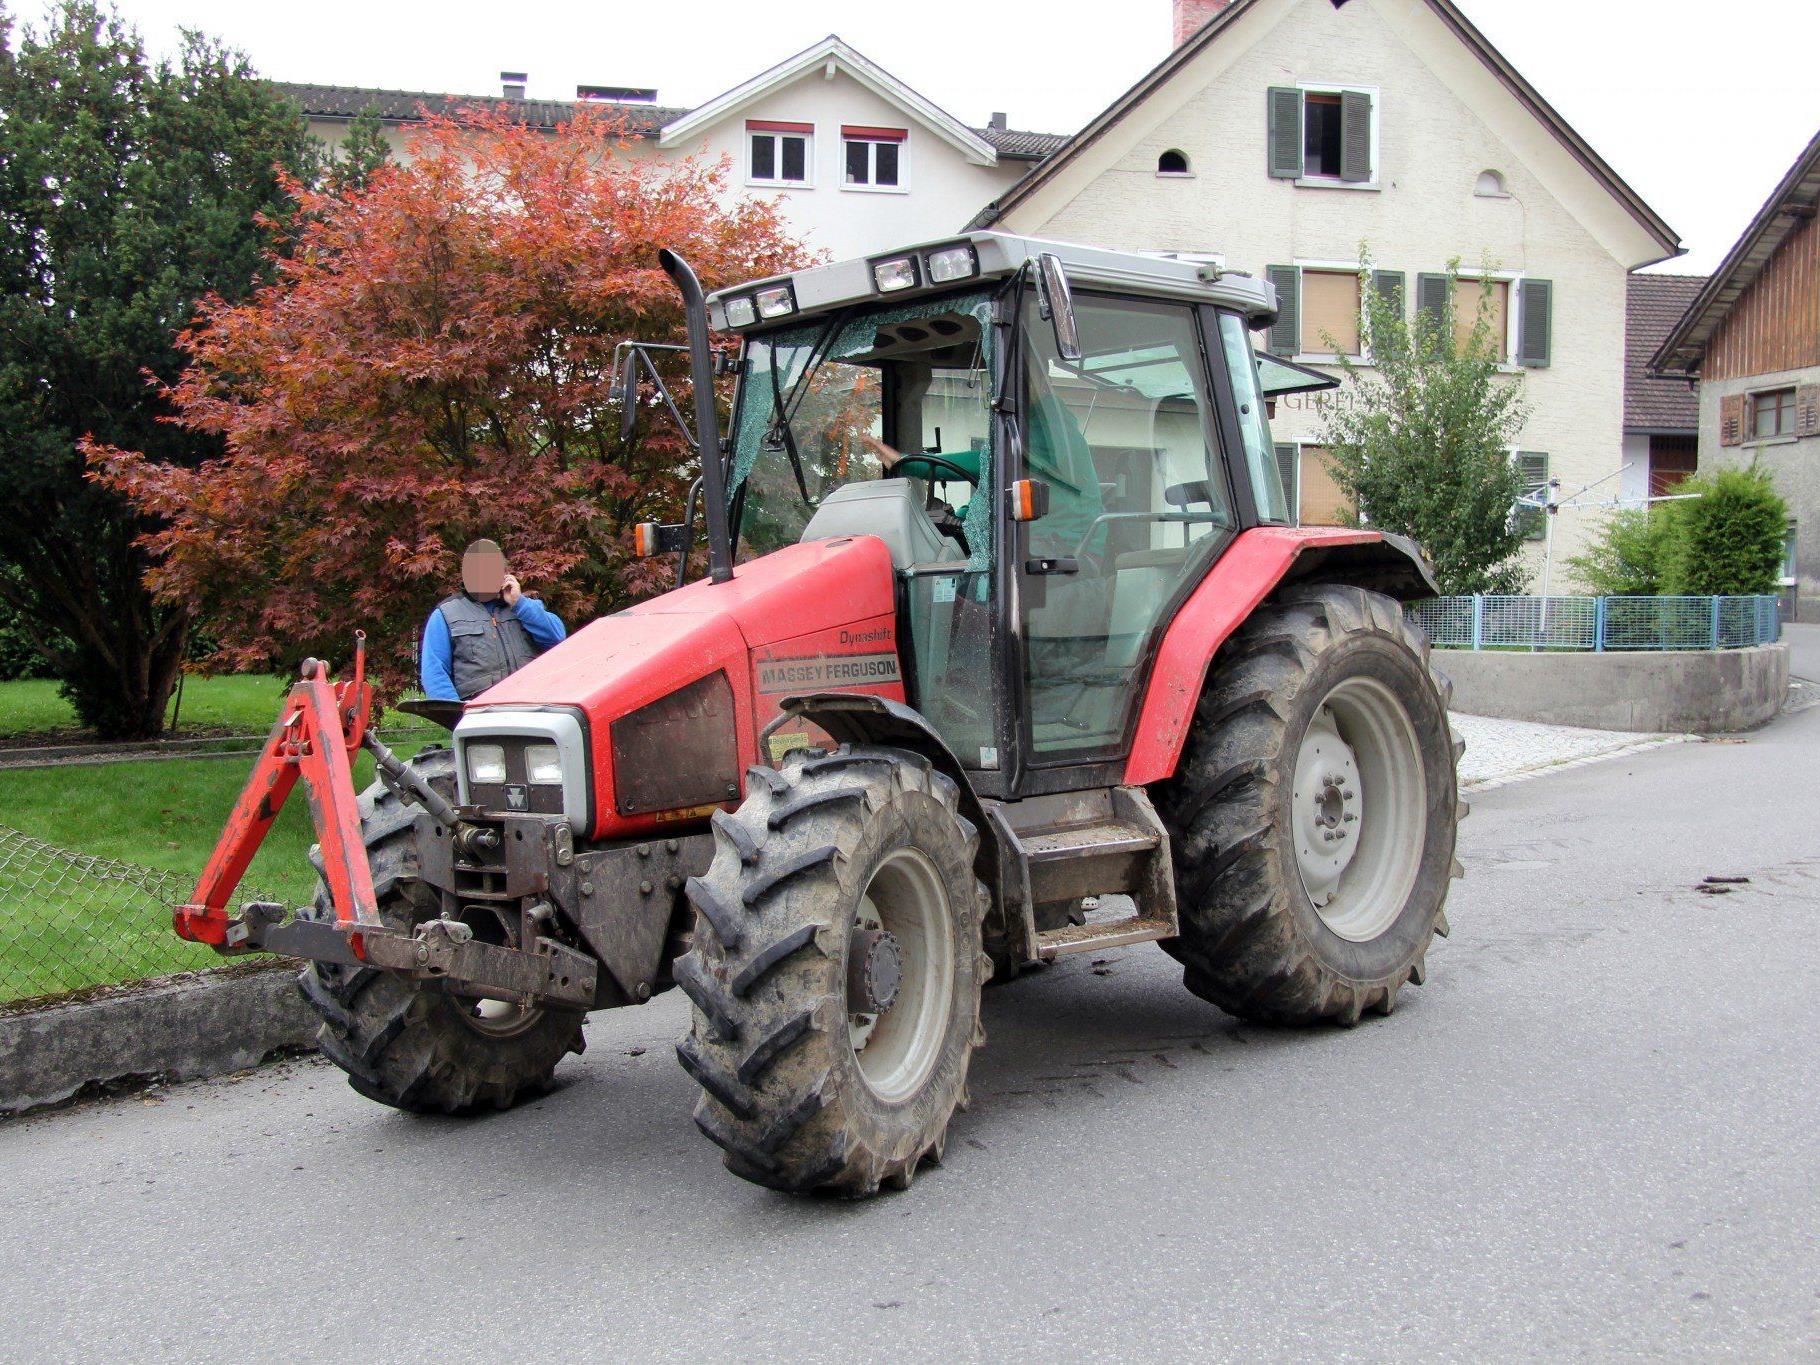 Traktor fuhr in Hausgarten.